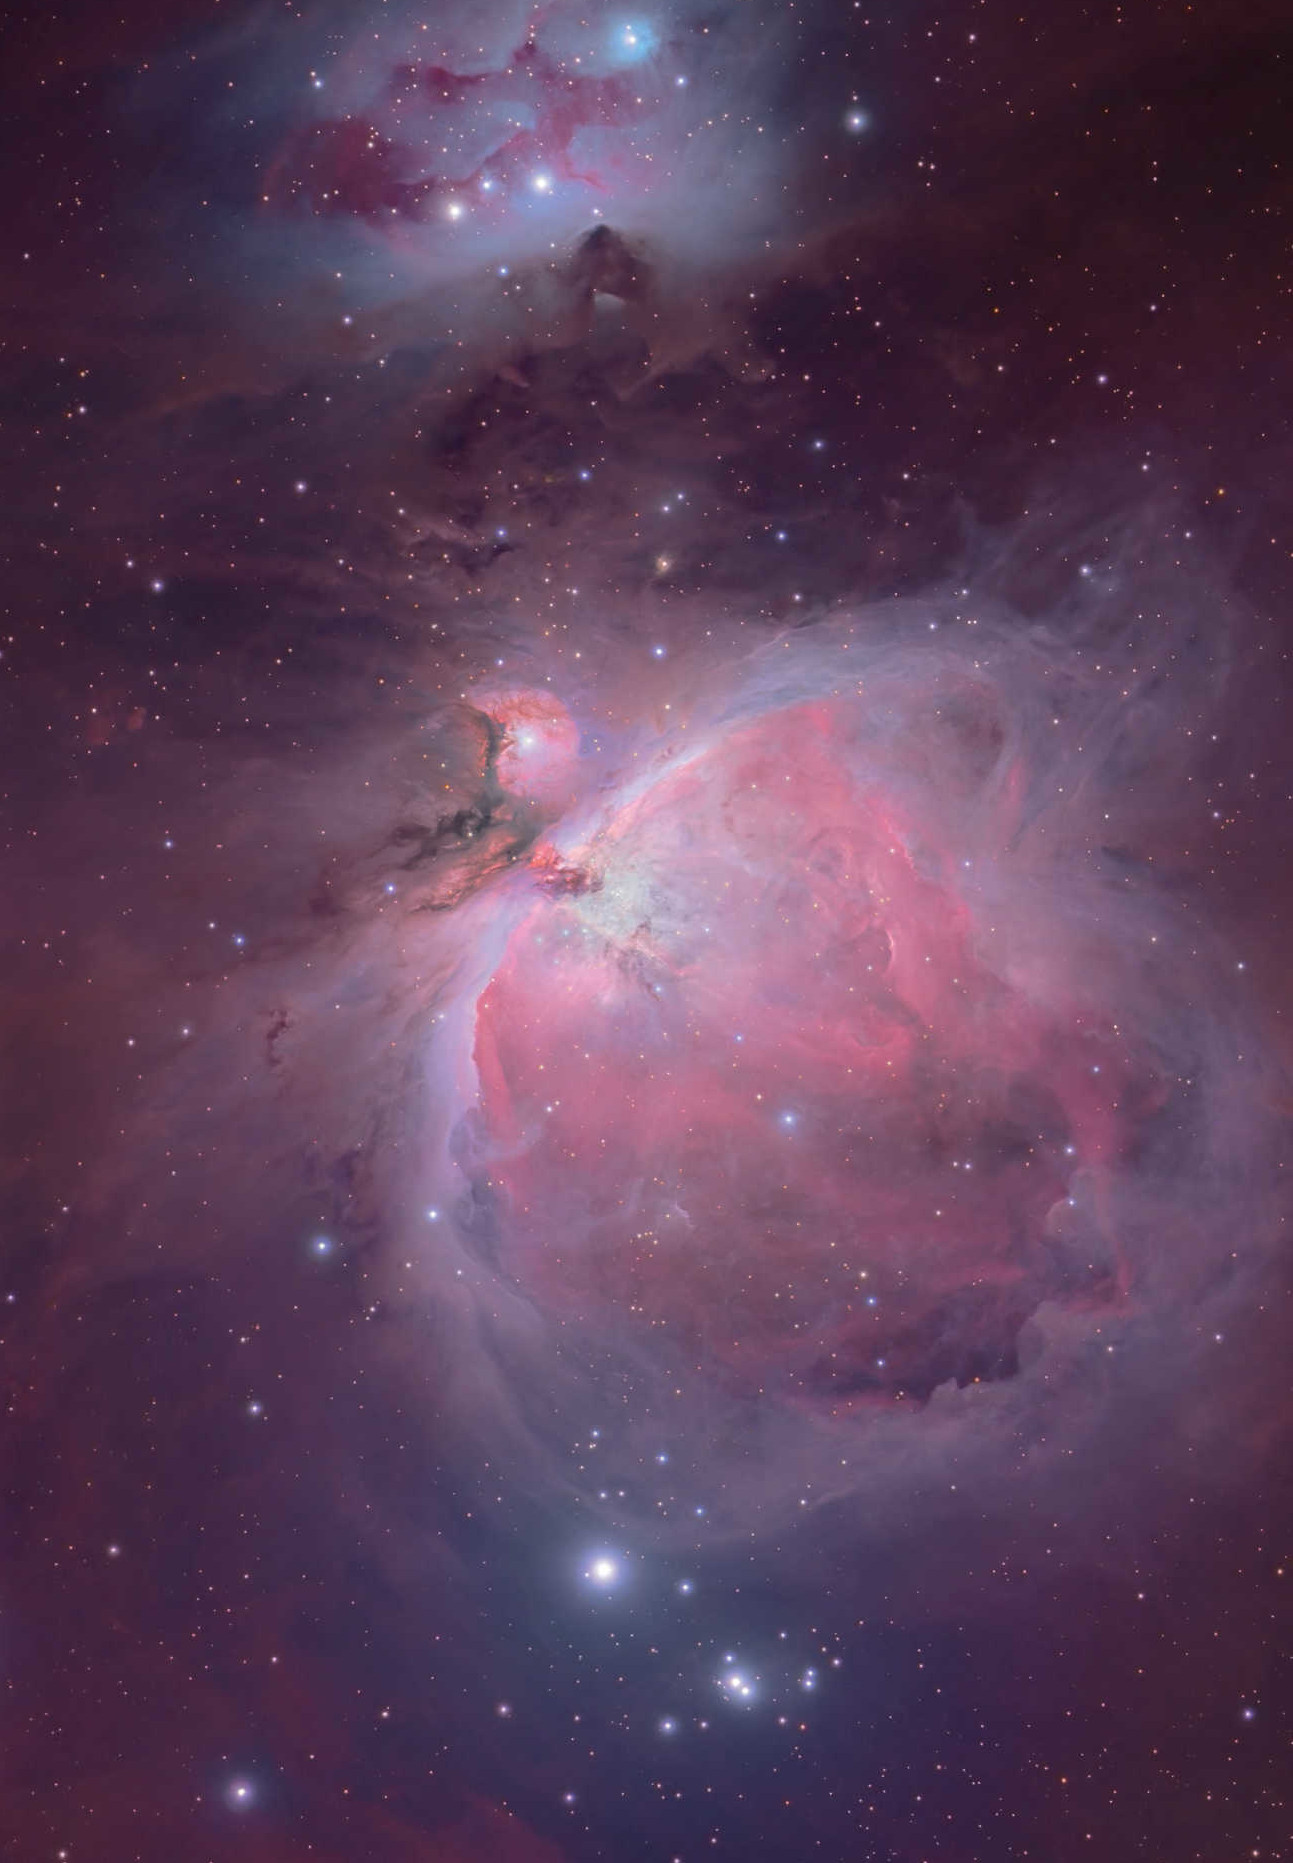 Fantastyczny świat Mgławicy Oriona zachwyci każdego miłośnika astronomii. Mario Weigand